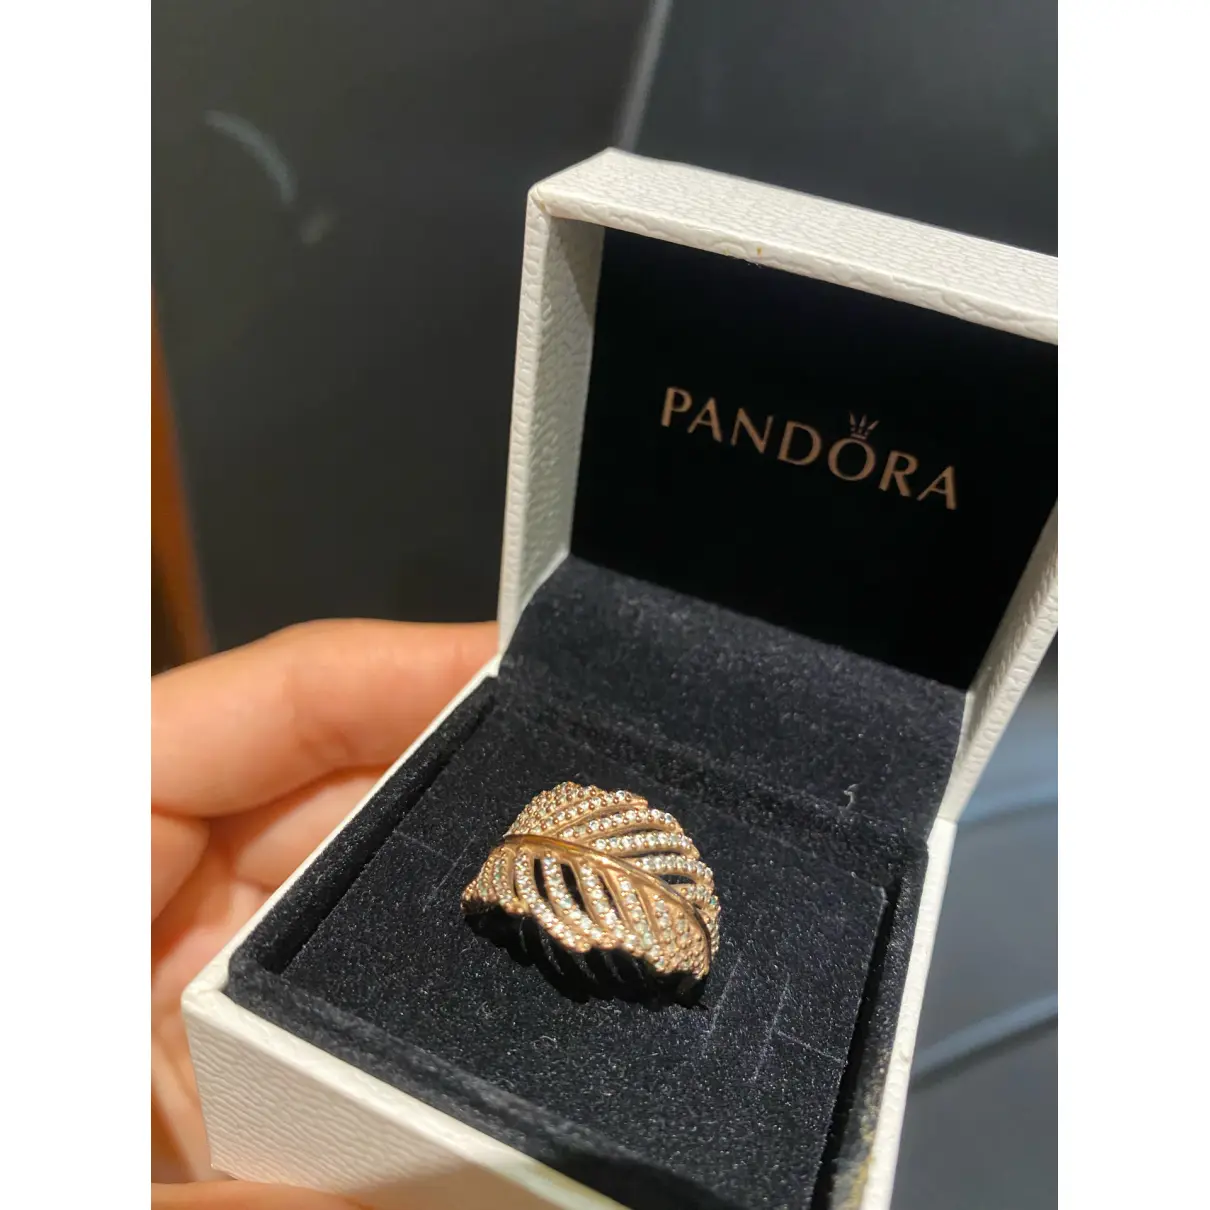 Buy Pandora Ring online